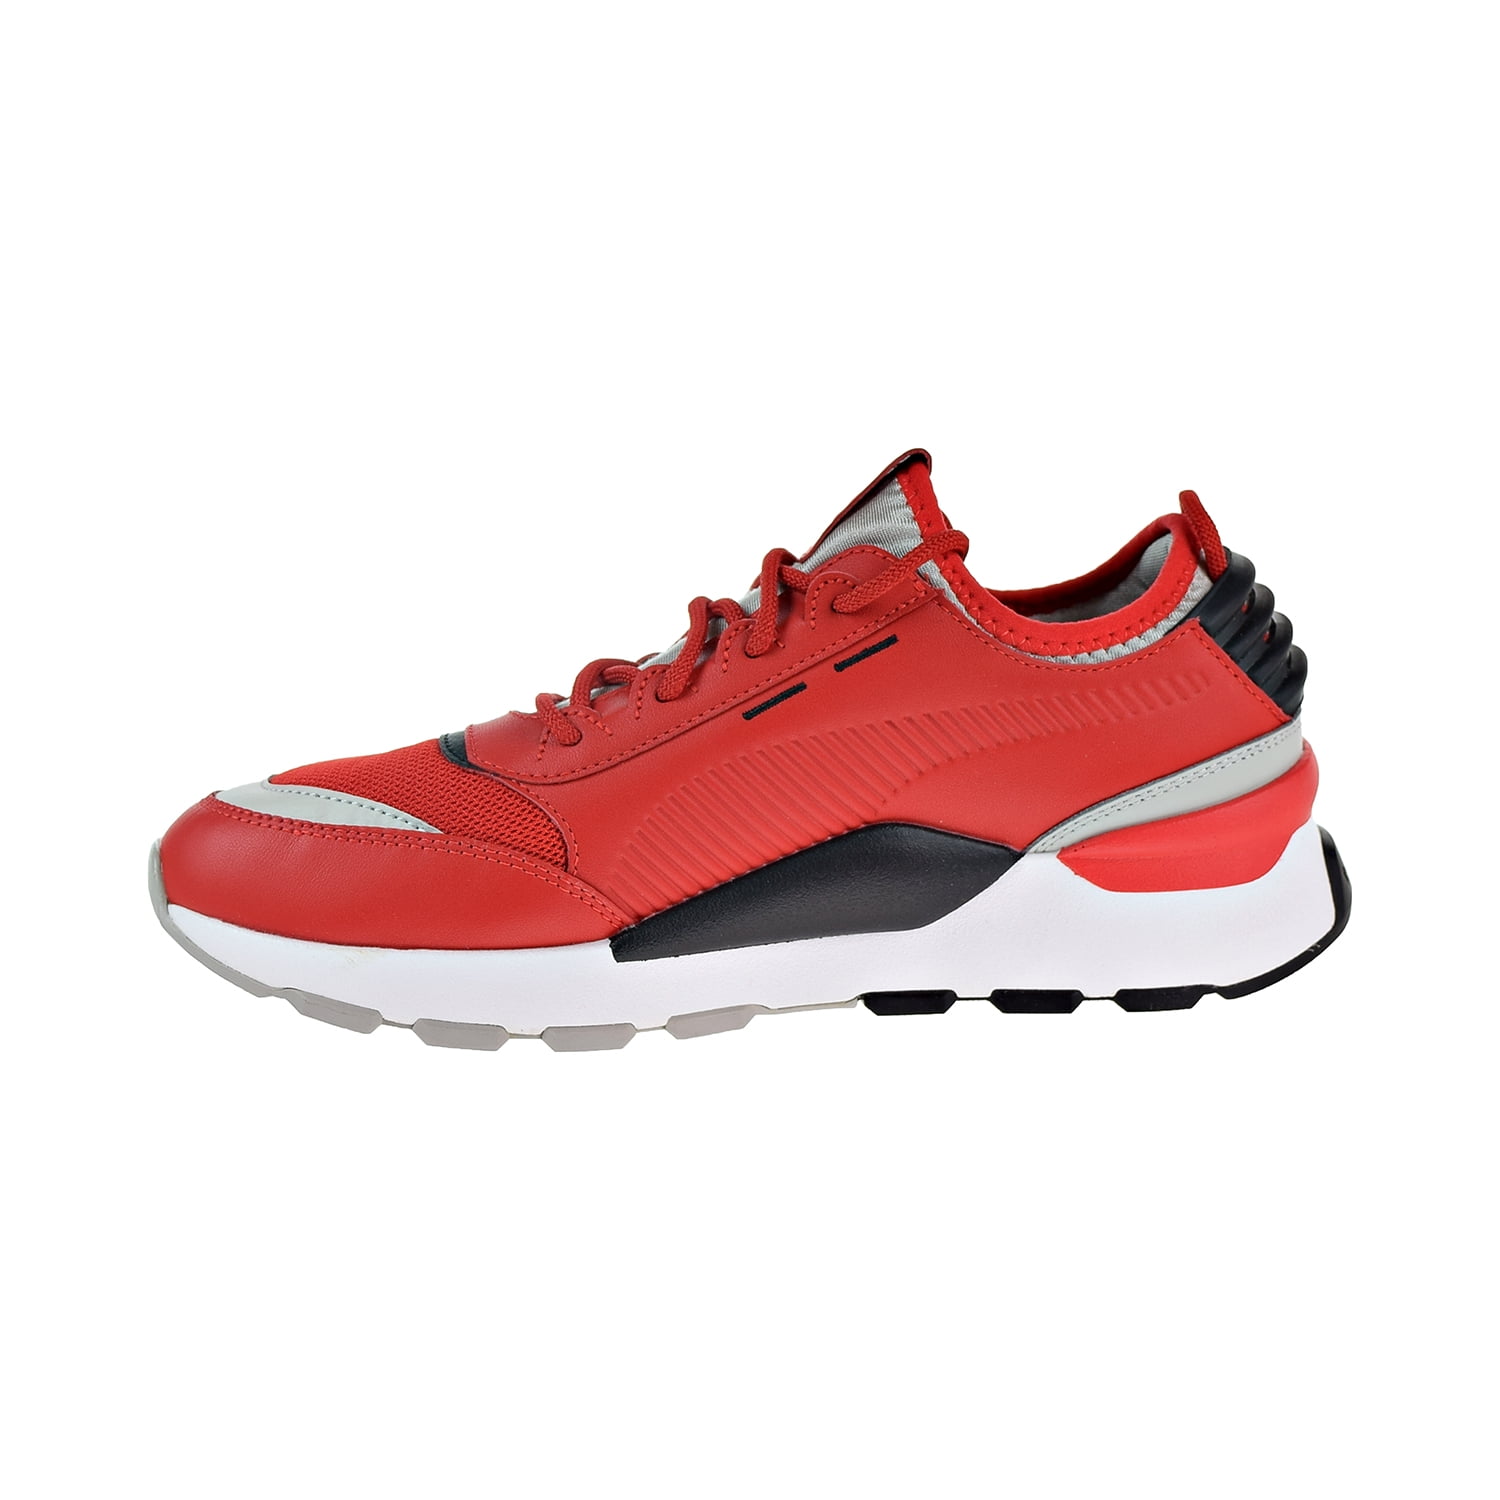 Inaccesible sustracción Catarata Puma RS-0 Sound Men's Shoes High Risk Red/Grey/Violet/Black 366890-03 -  Walmart.com